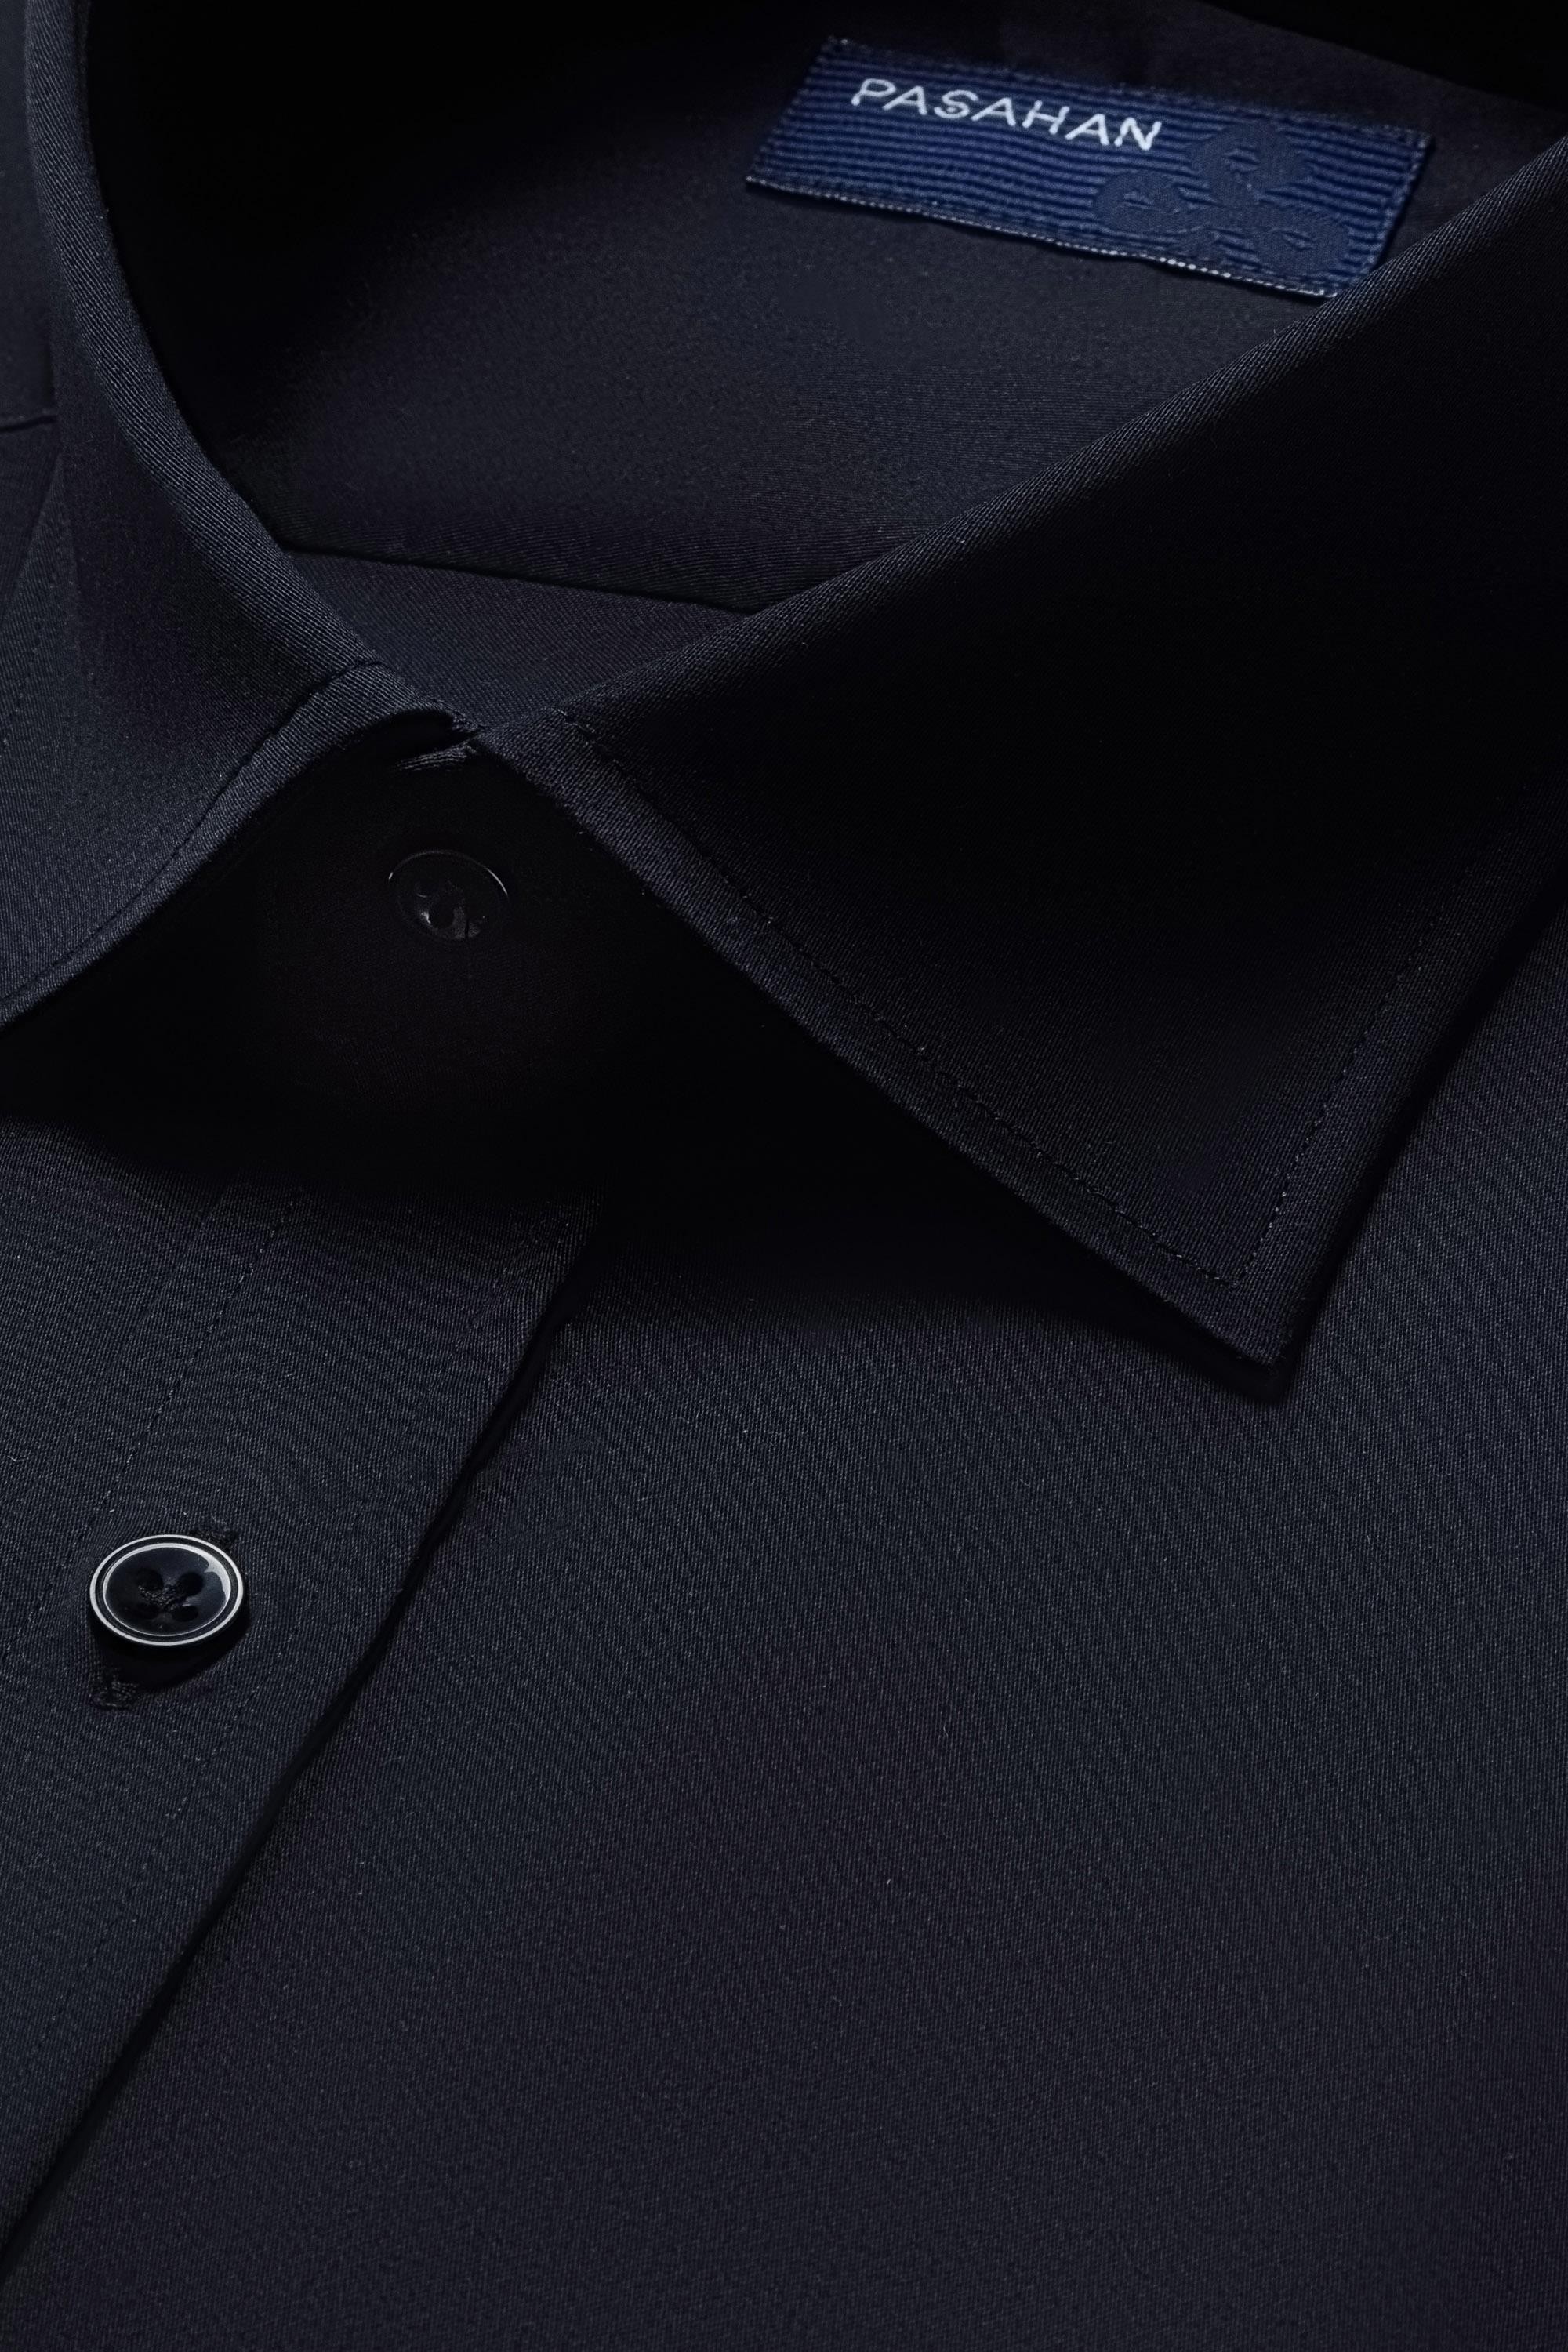 Klasik Slim Fit Gömlek - Siyah